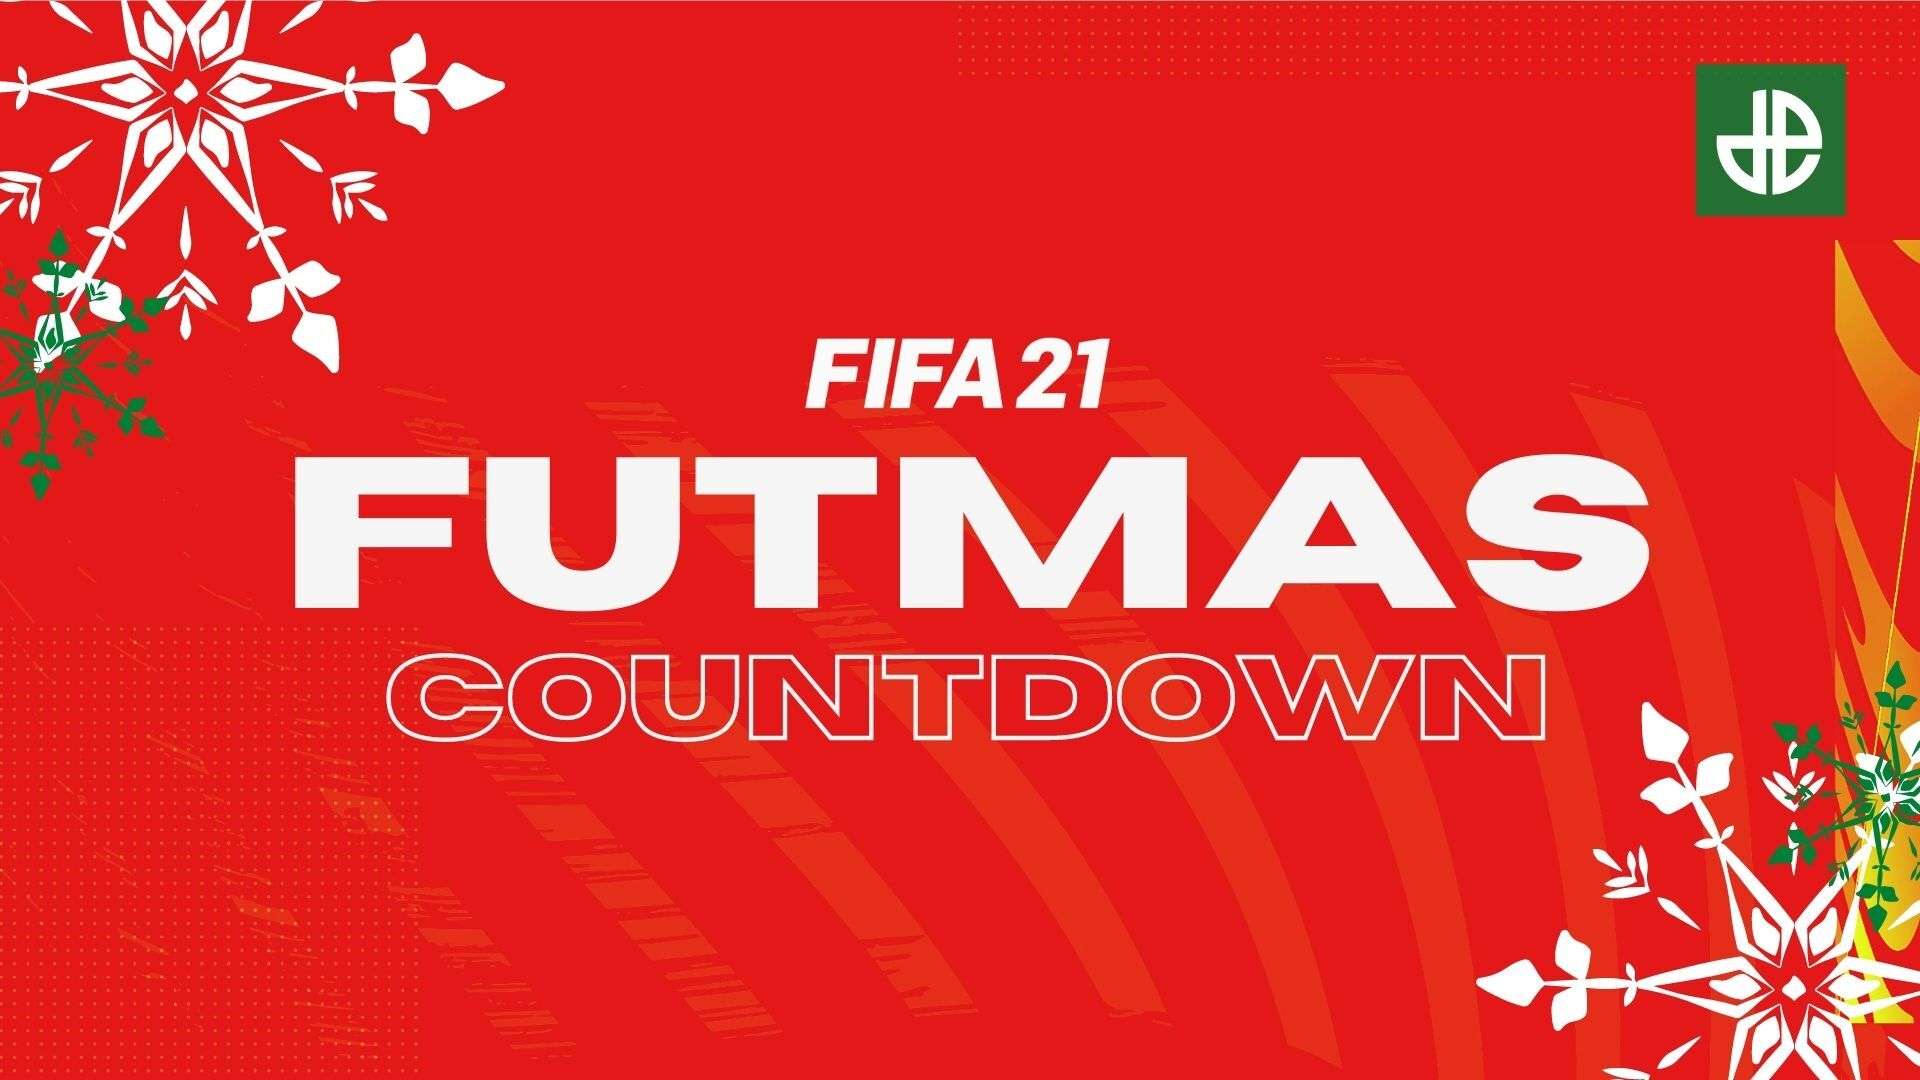 FUTMAS logo for FIFA 21